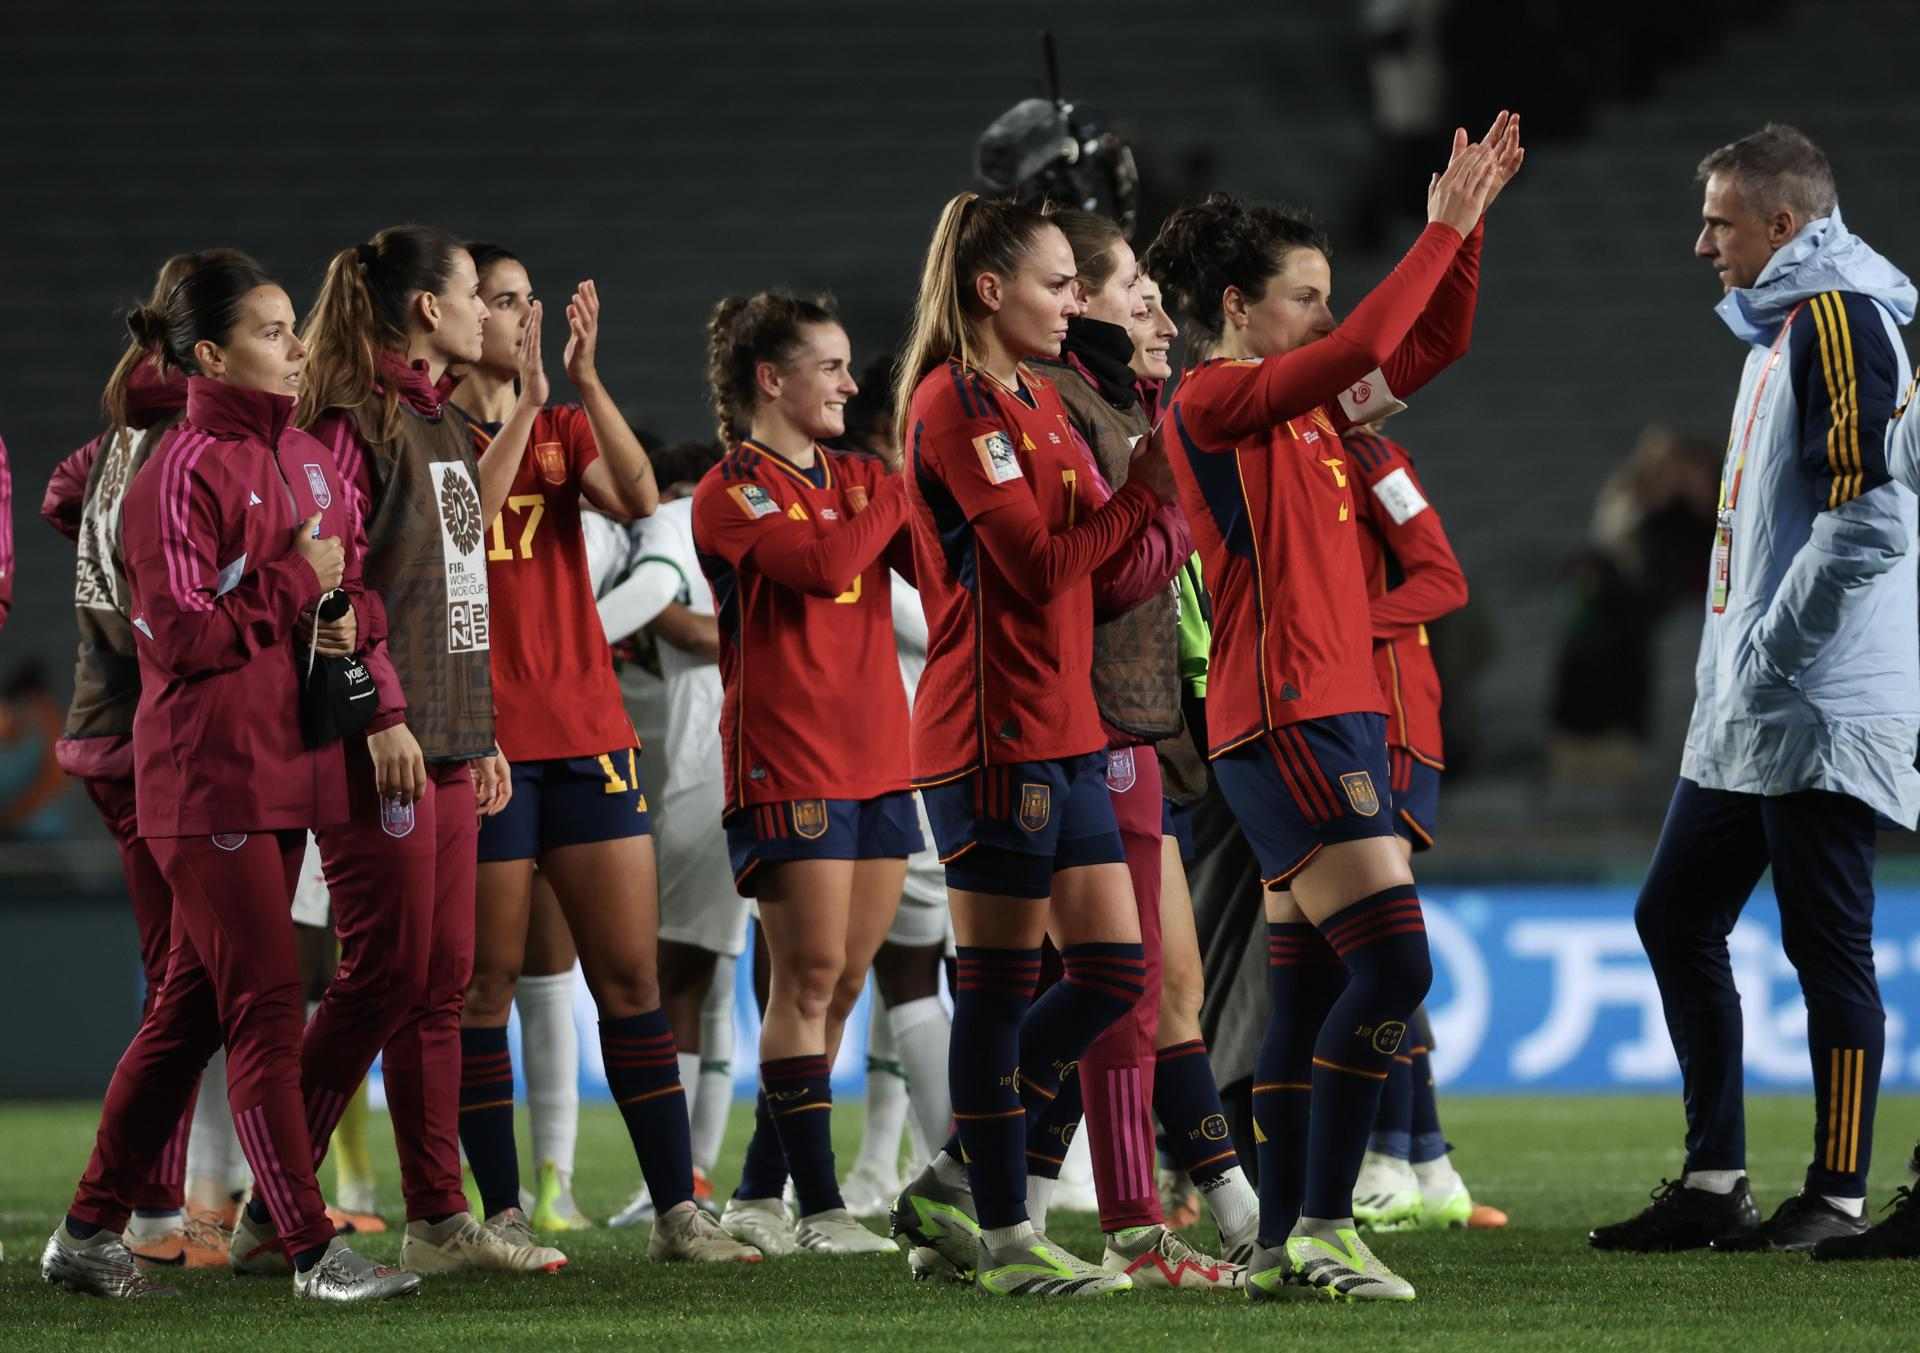 Les possibilitats d'Espanya de guanyar el Mundial femení: més assequible de l'esperat